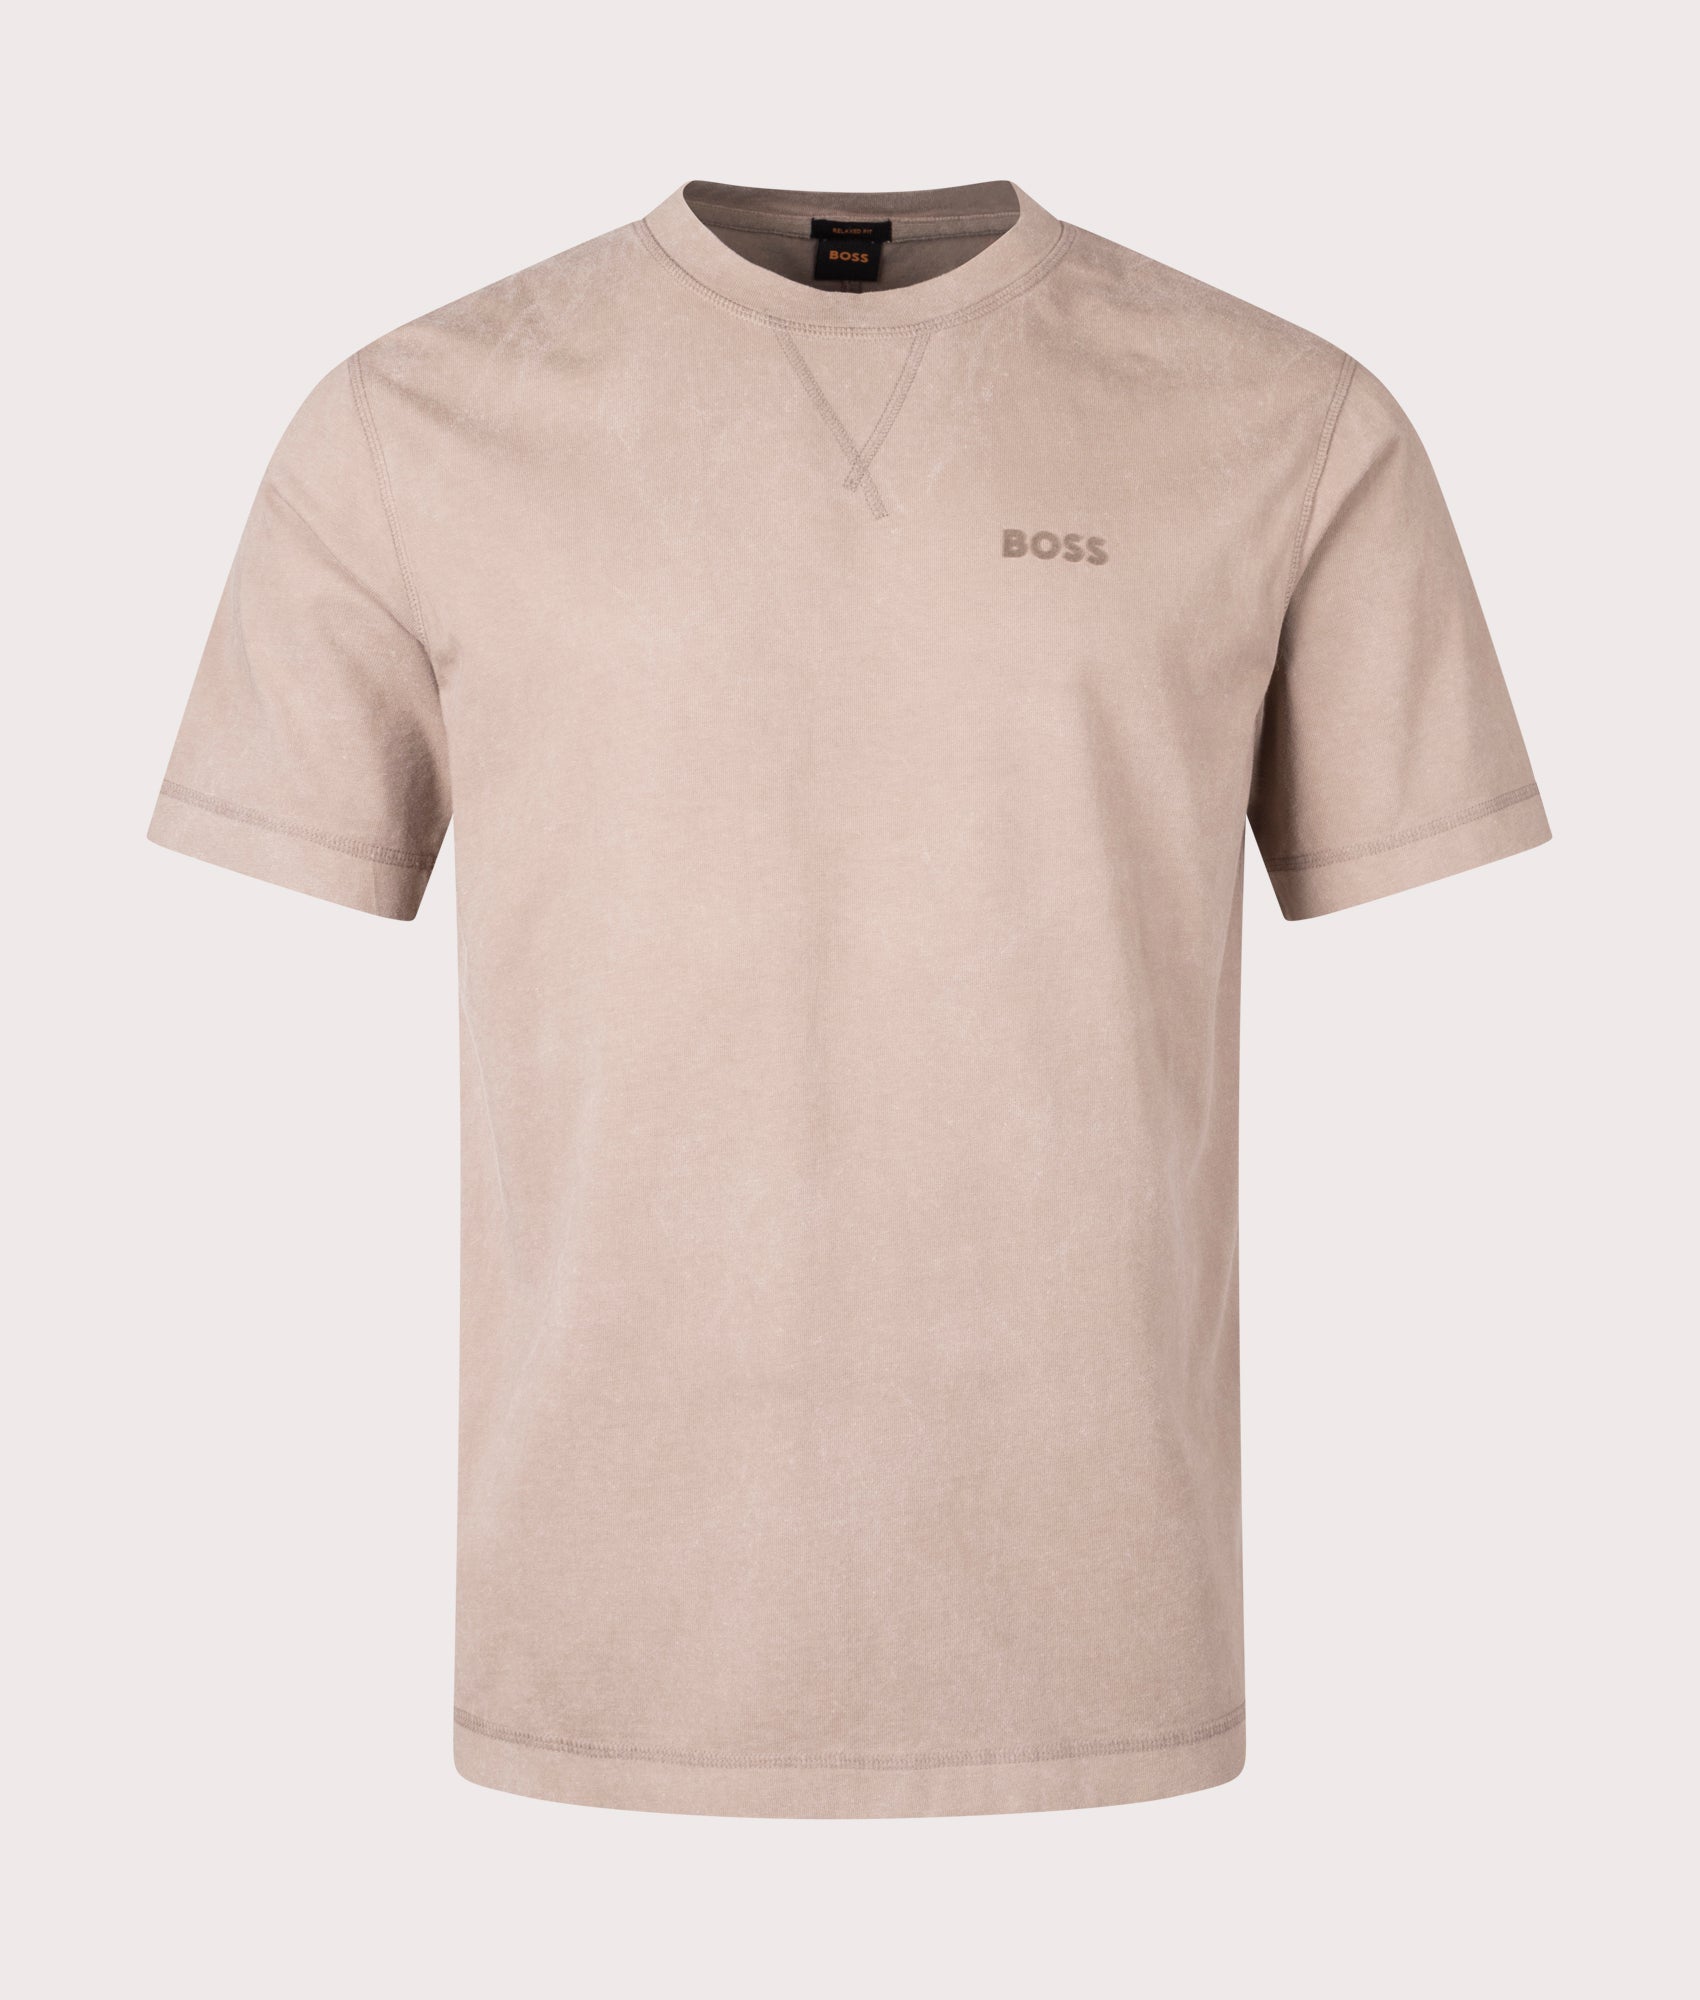 BOSS Mens Raw Logo T-Shirt - Colour: 246 Open Brown - Size: XL